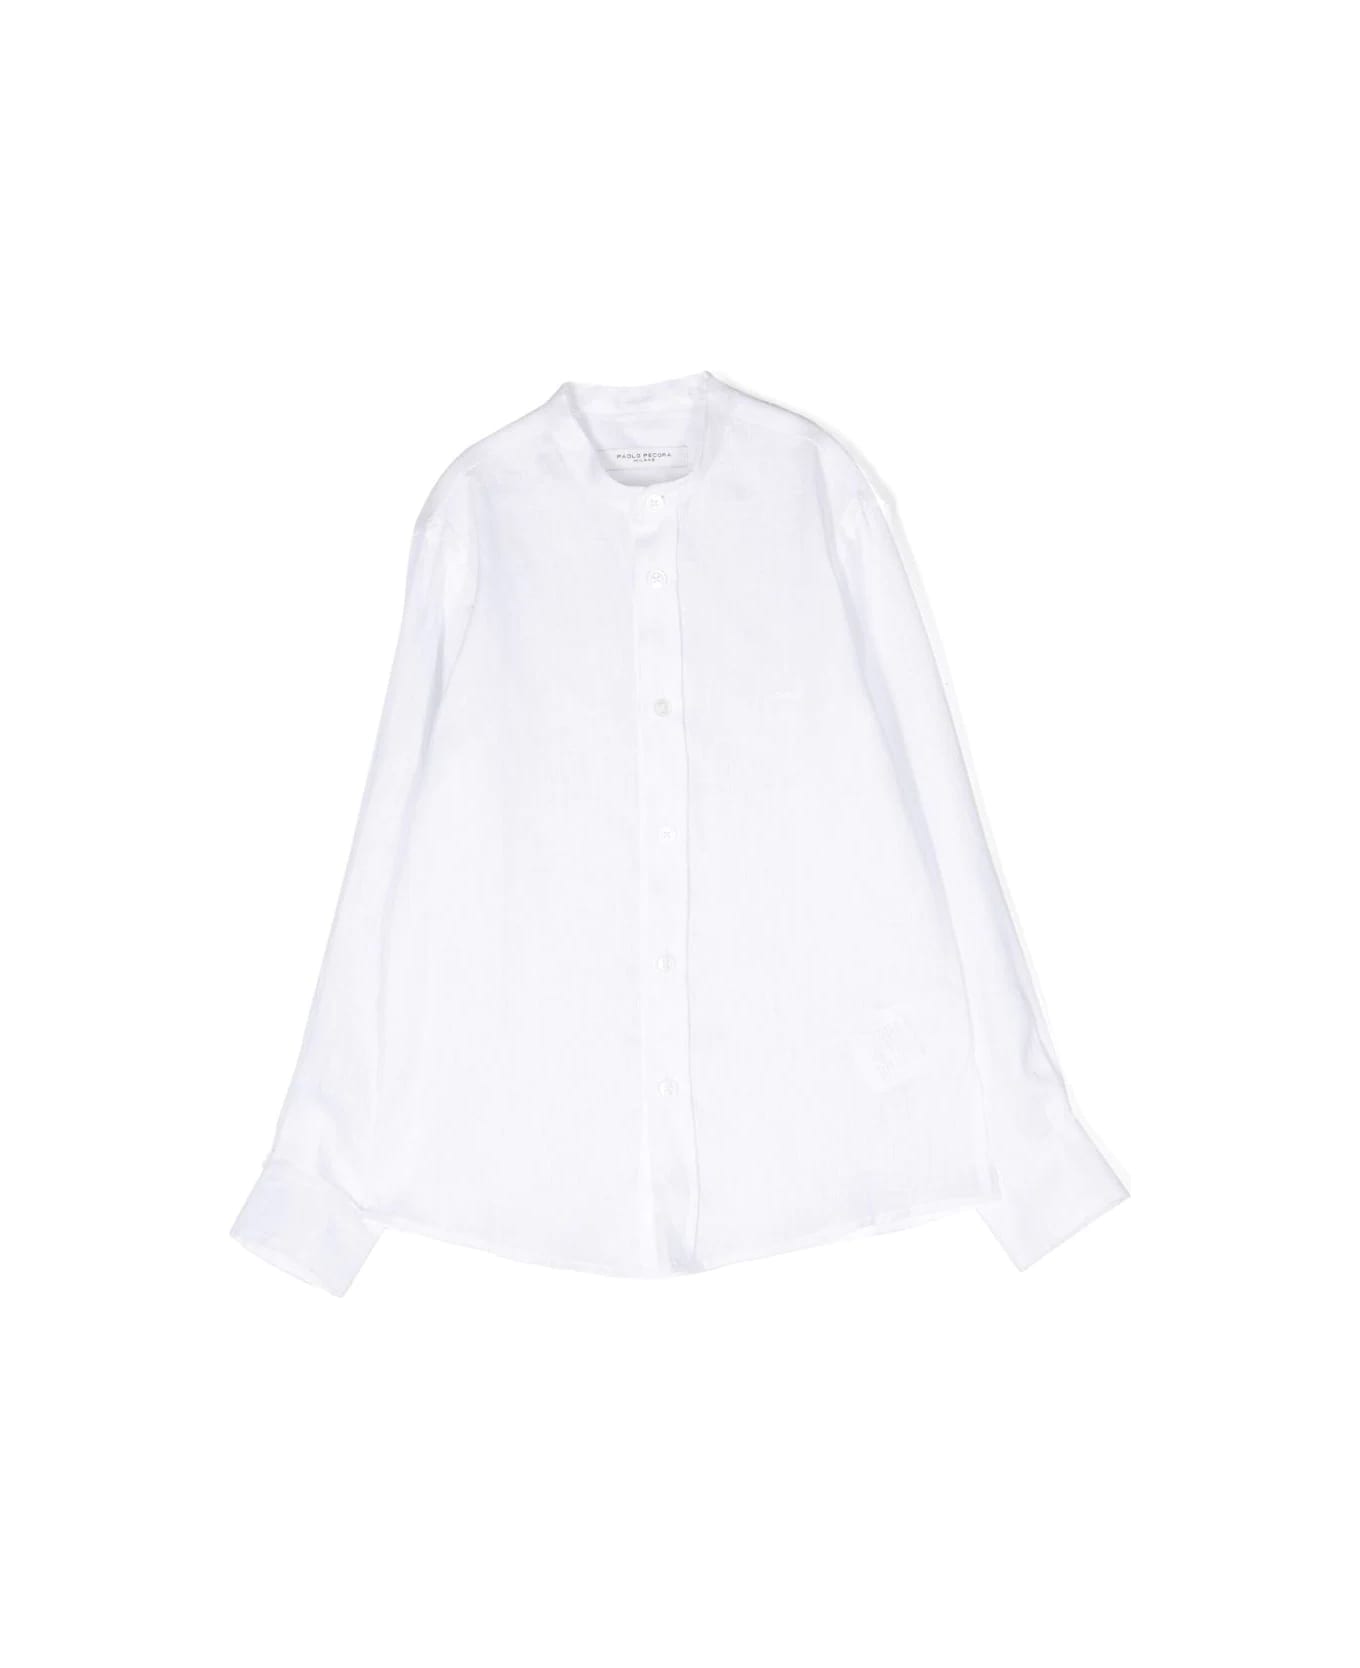 Paolo Pecora Korean Shirt - White シャツ